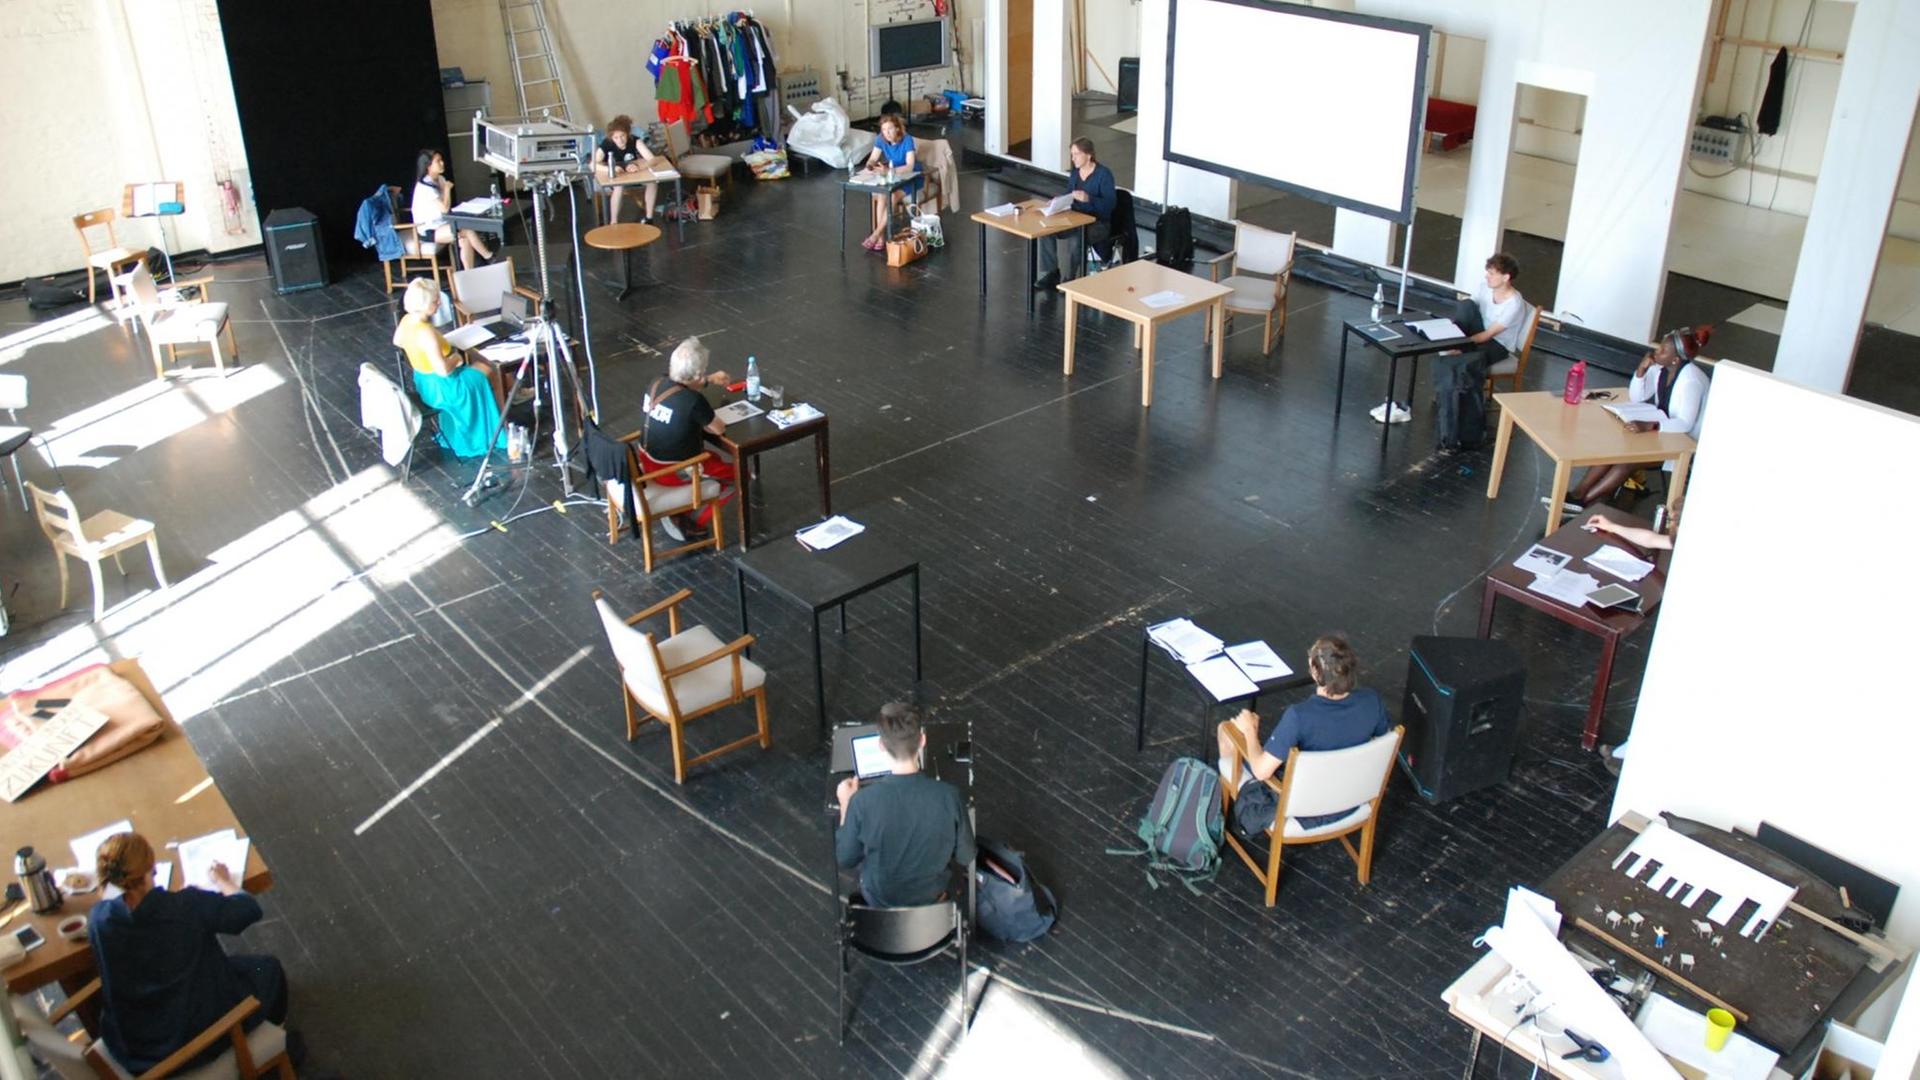 Leseprobe im Bochumer Schauspielhaus: Schauspieler und Regisseur sitzen in einem großen Kreis im Probensaal und halten wegen der Coronapandemie Abstand.